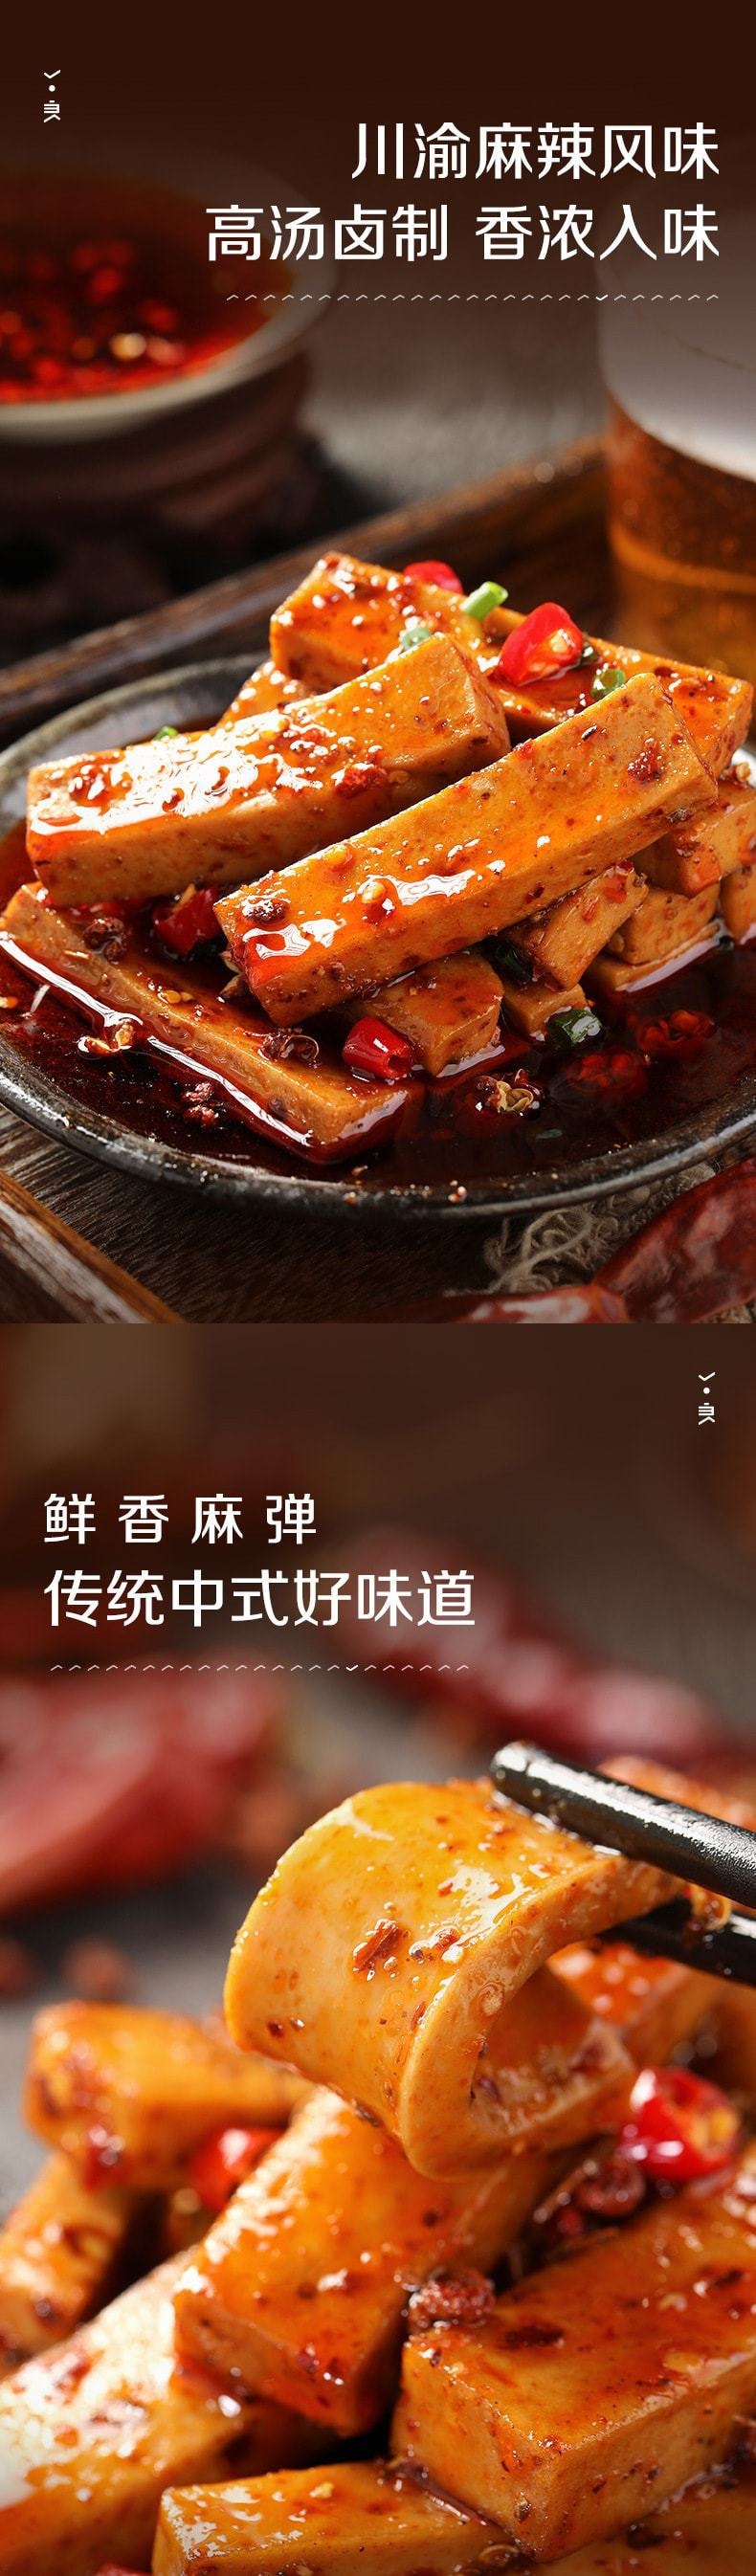 中国 良品铺子 Q爽豆干麻辣味 豆干豆腐干川渝风味休闲小吃 128g/袋